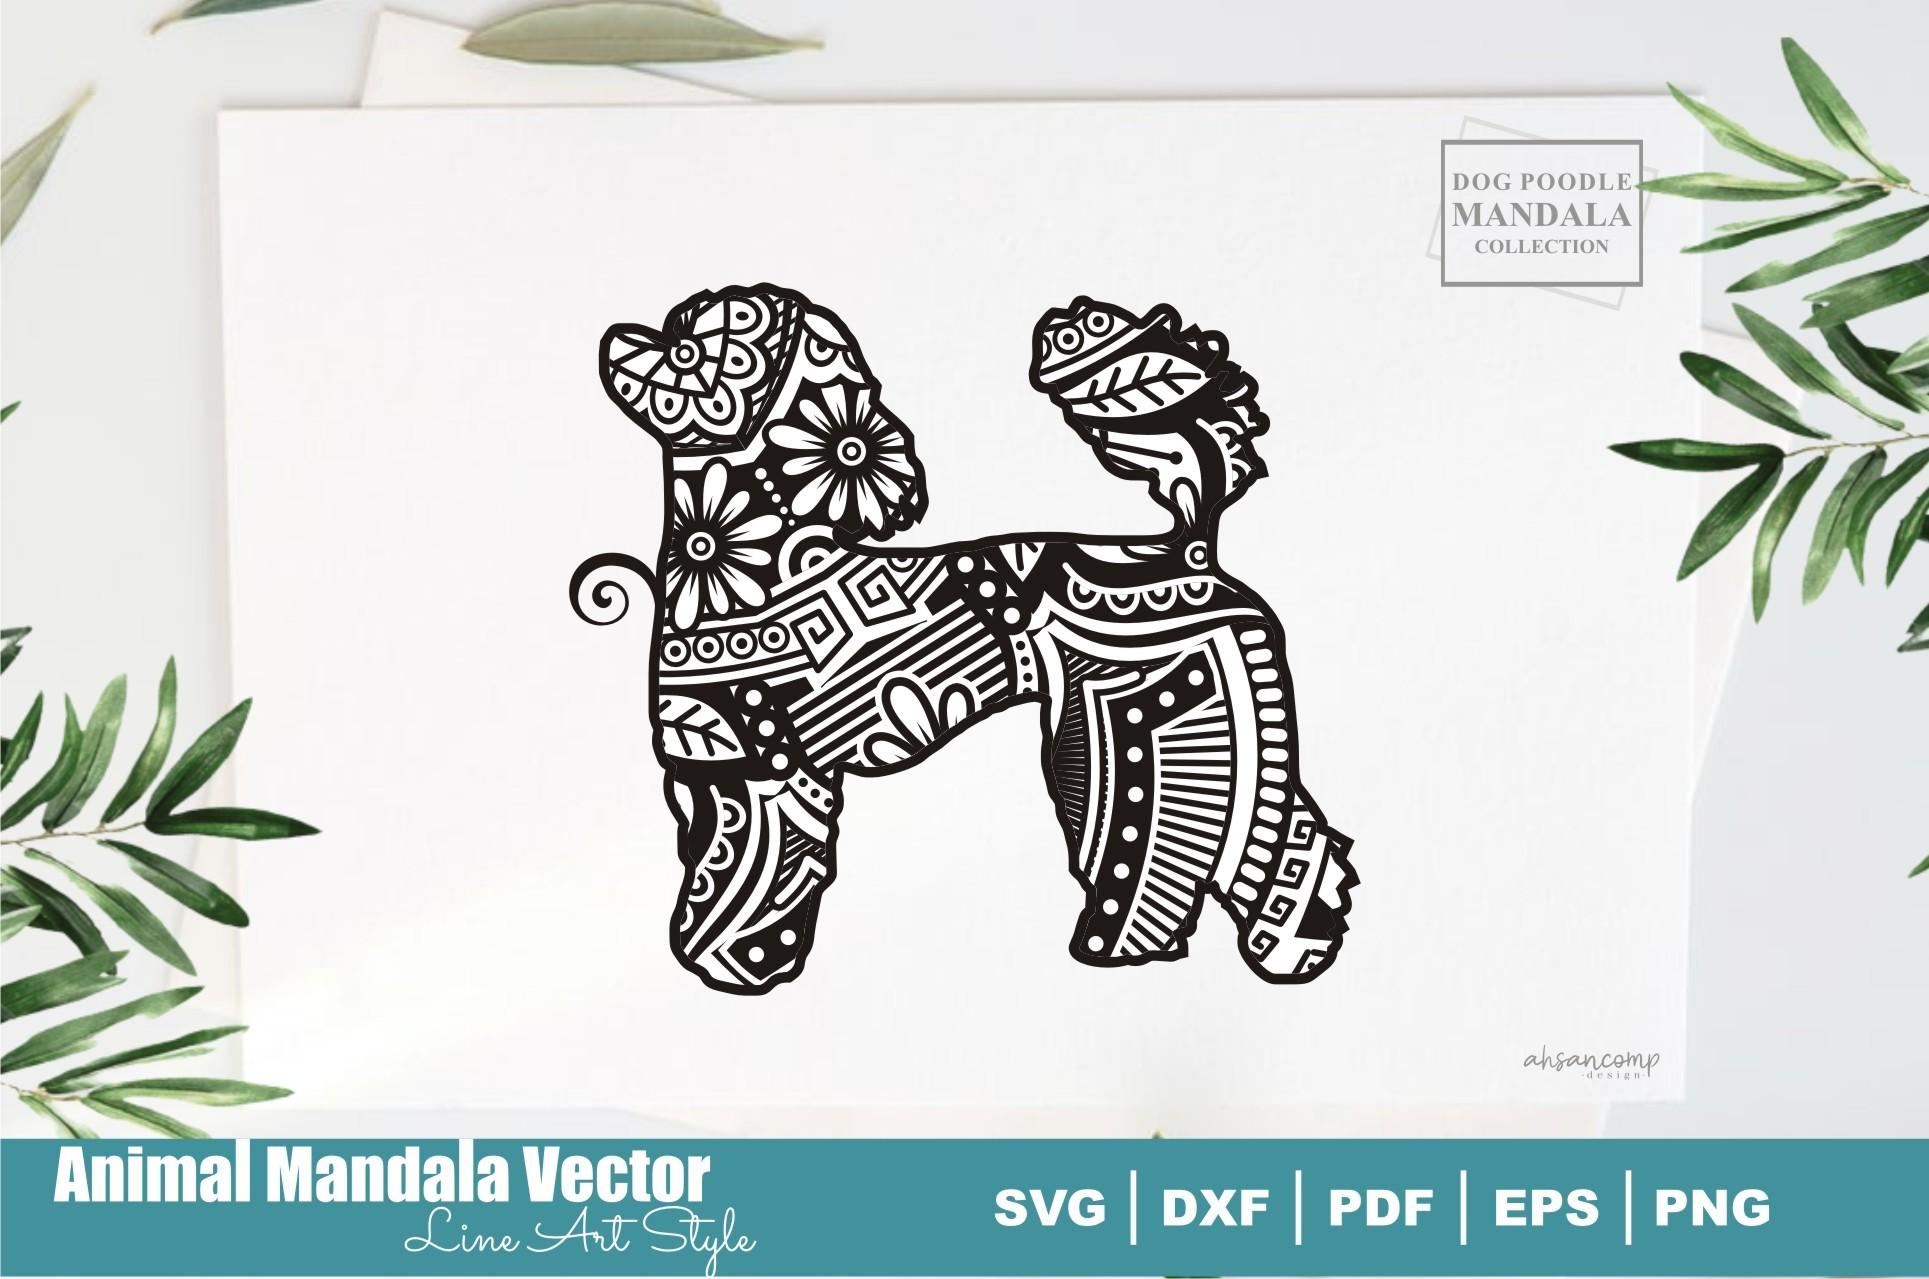 Dog Poodle Mandala #25. Boho Style SVG